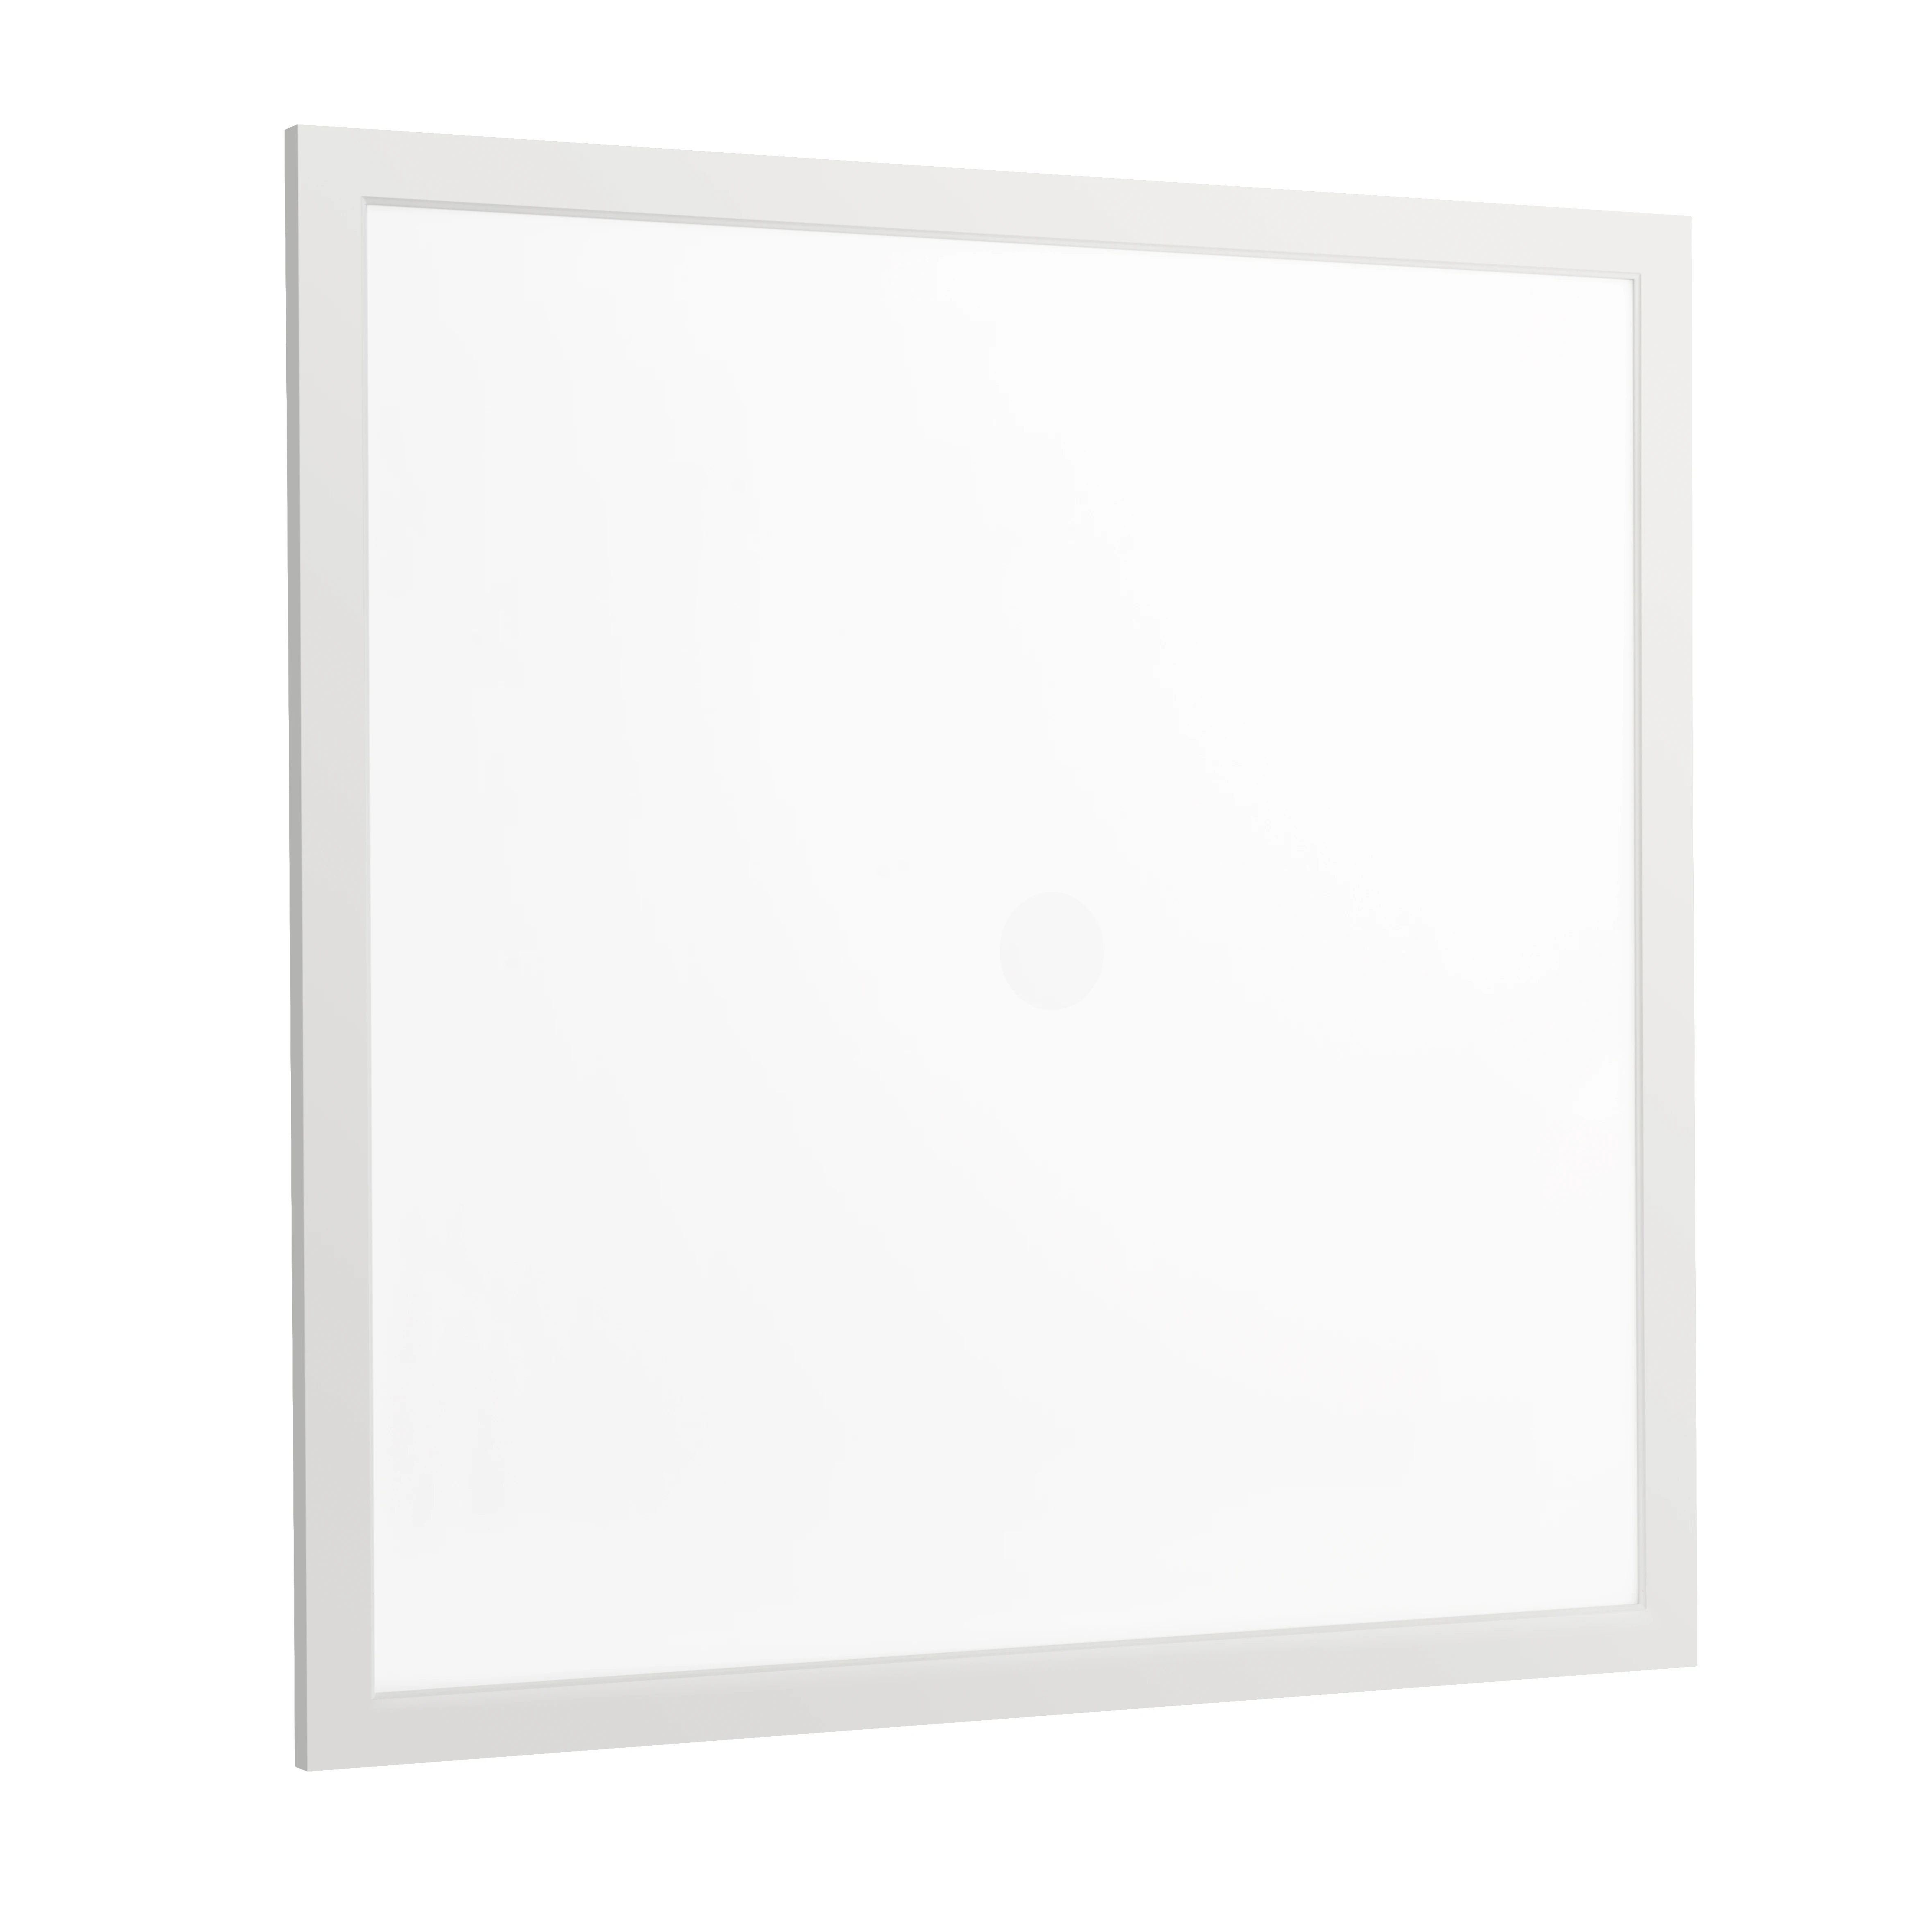 High Quality Frameless LED Light Panel/595X595 LED Panel Light/LED Panel Ceiling Light 24X24 Inch